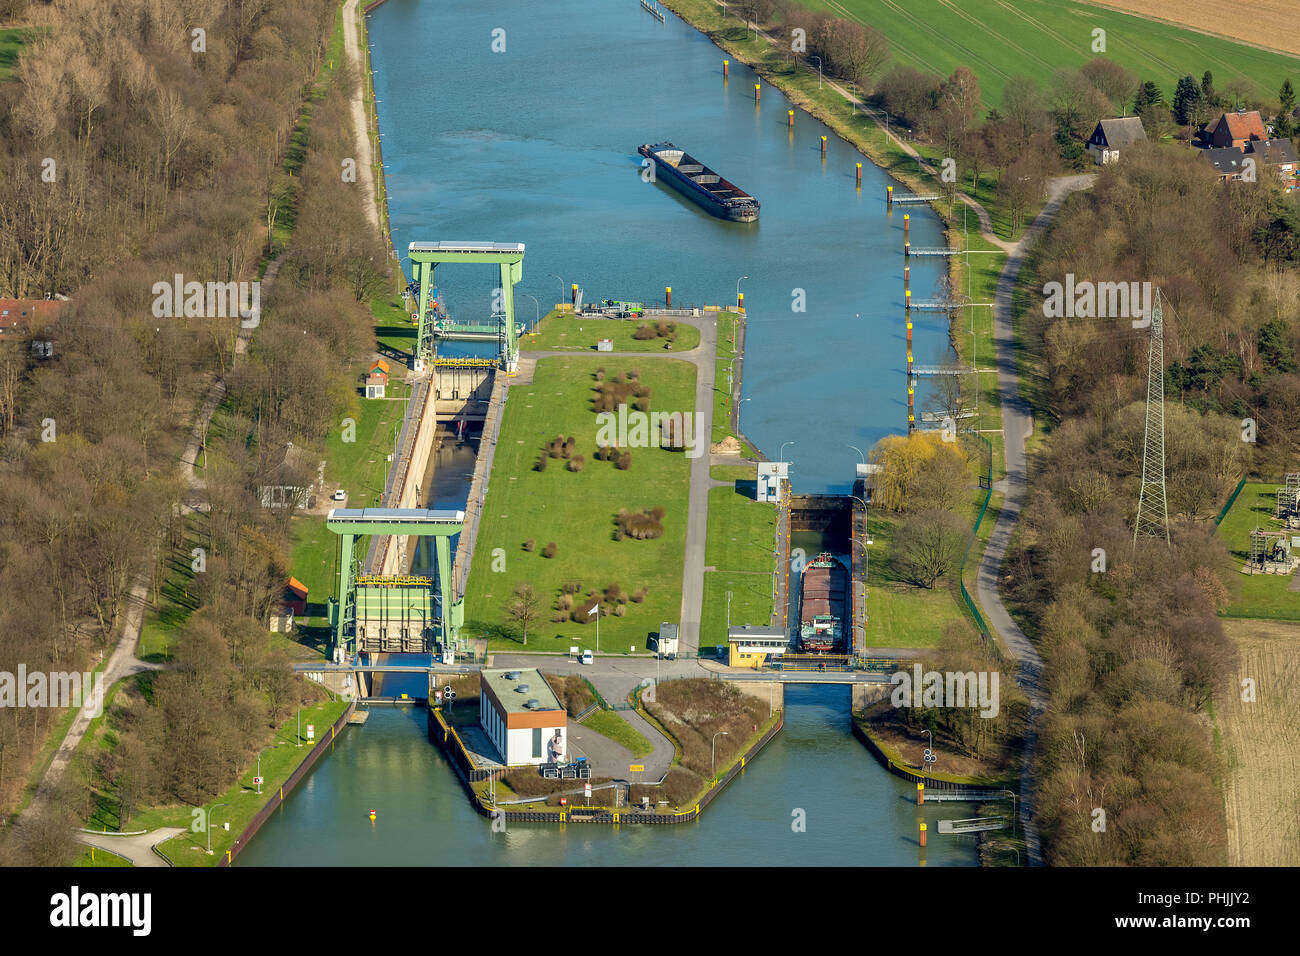 Hünxe Schloss, Schloss in der Wesel-Datteln-Kanal in der Nähe von Hünxe, Oberwasser, Unterwasser, große sperren. s Kleine Schloss, zwischen der Pumpstation in Hün Stockfoto